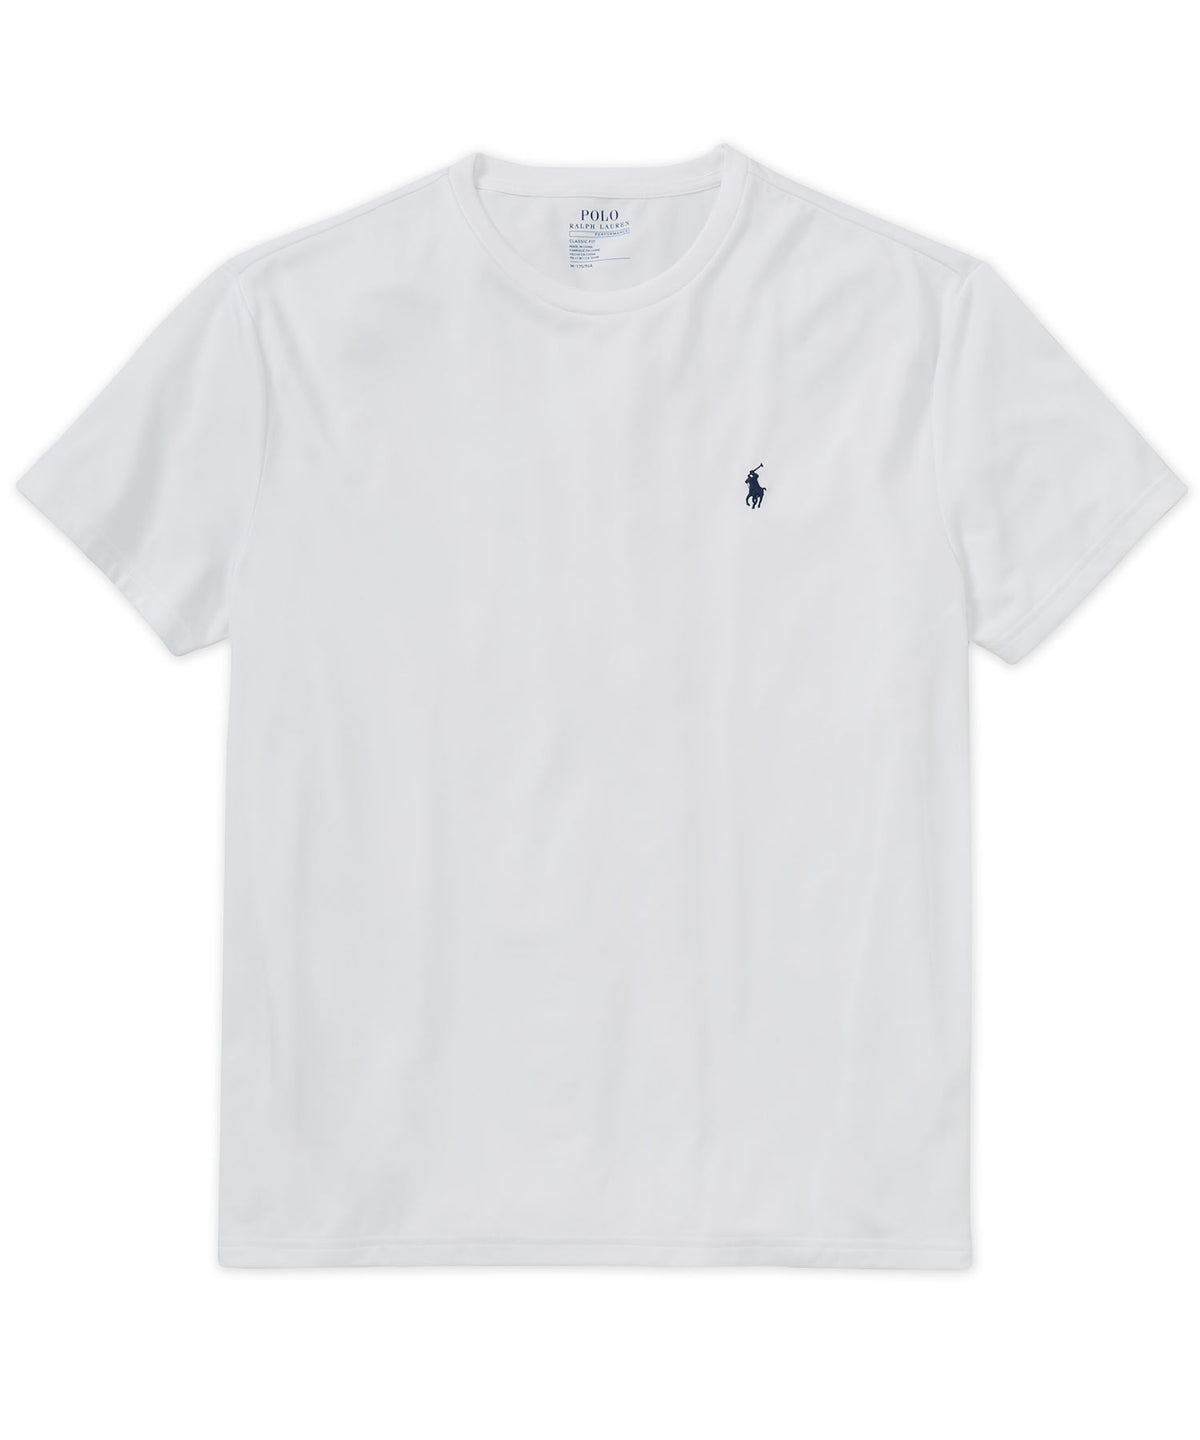 Polo Ralph Lauren Short Sleeve Performance T-Shirt, Men's Big & Tall